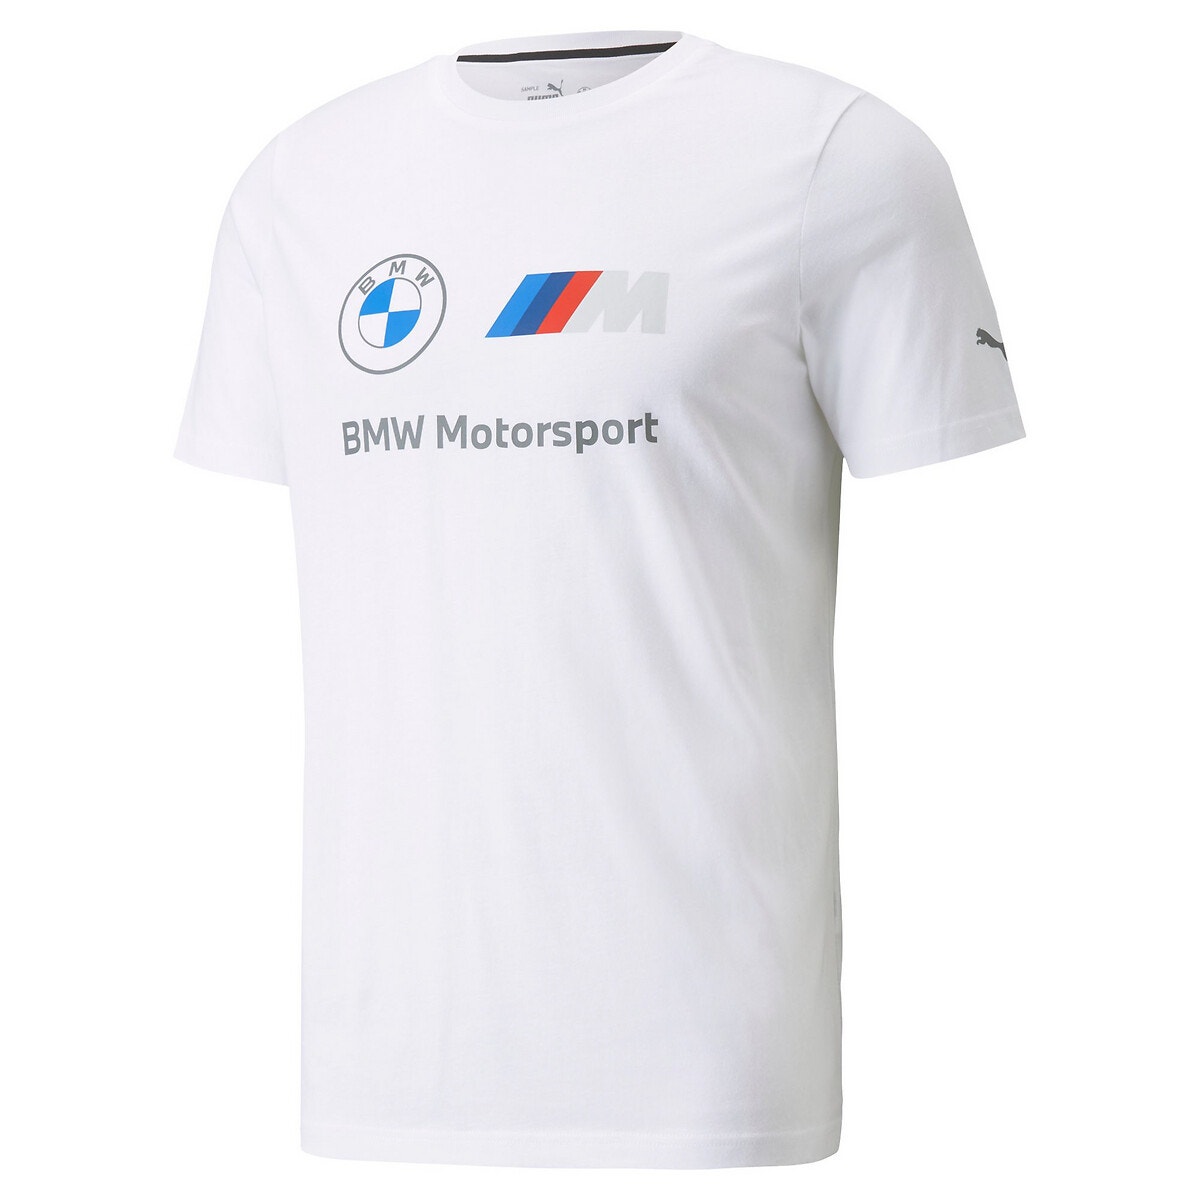 ΑΝΔΡΑΣ | Μπλούζες & Πουκάμισα | T-shirts Κοντομάνικο T-shirt, Motorsport BMW